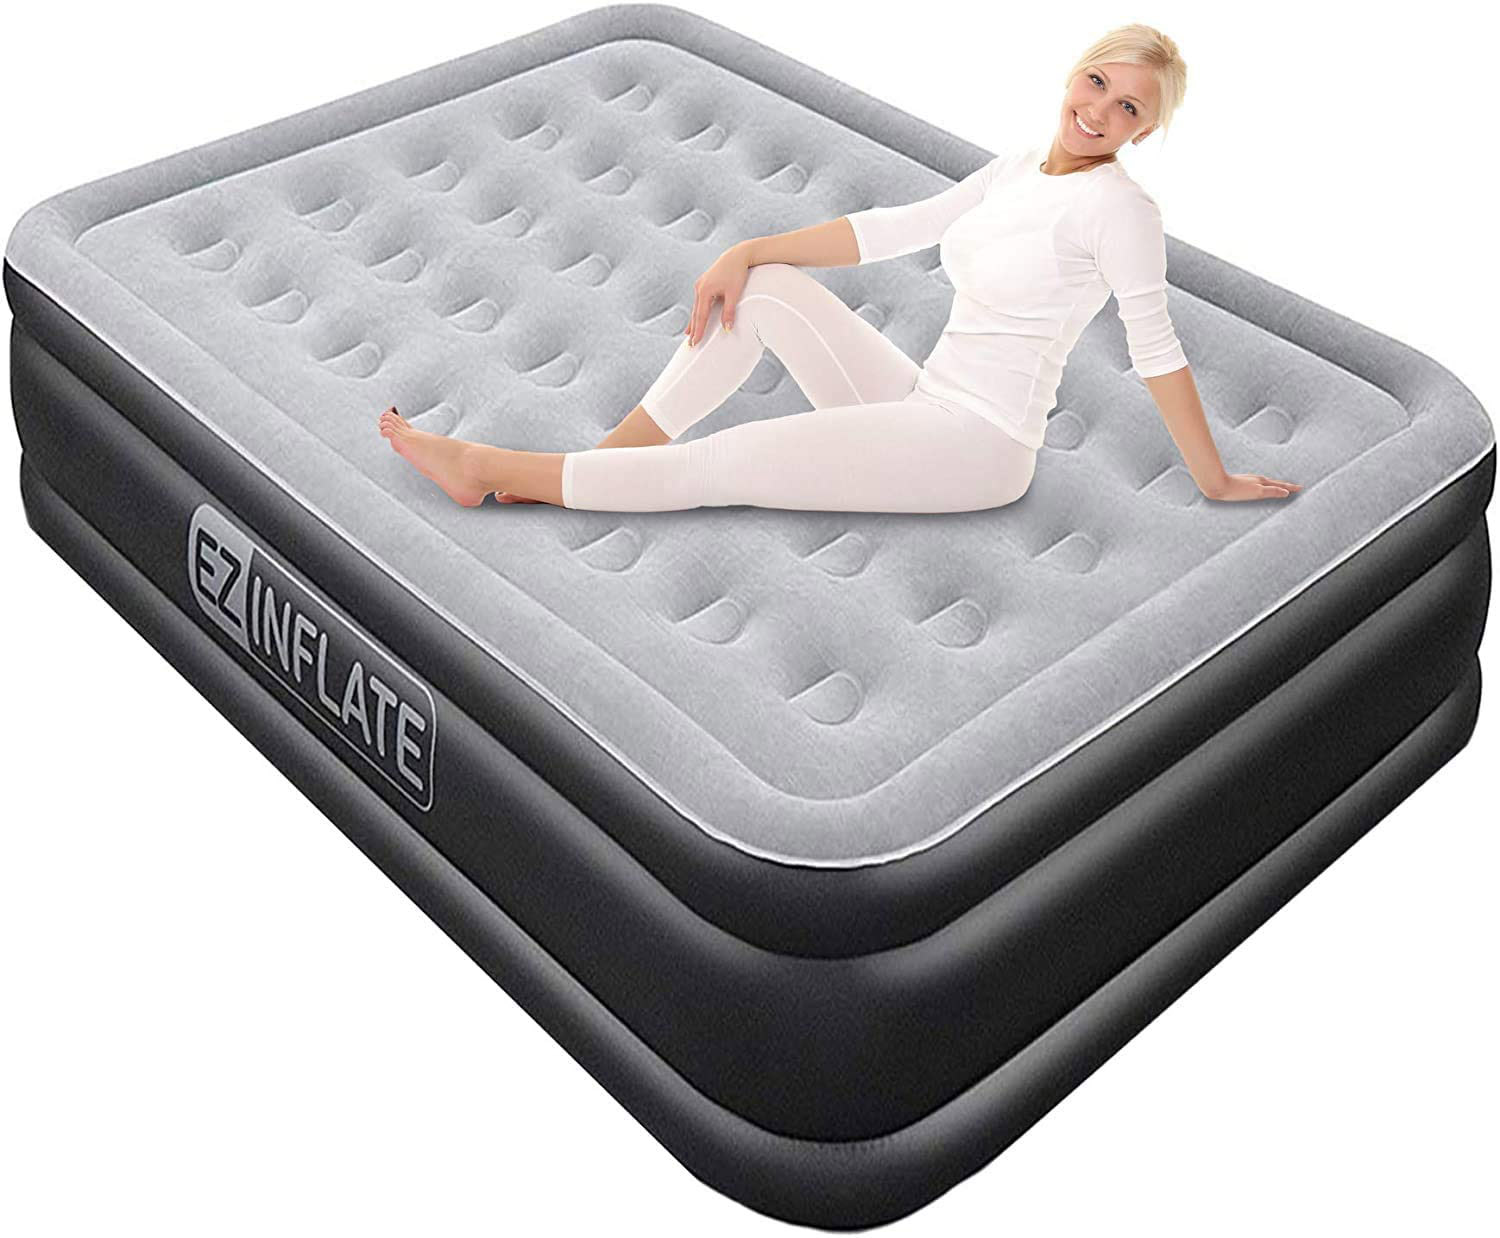 air mattress for camping flagstaff